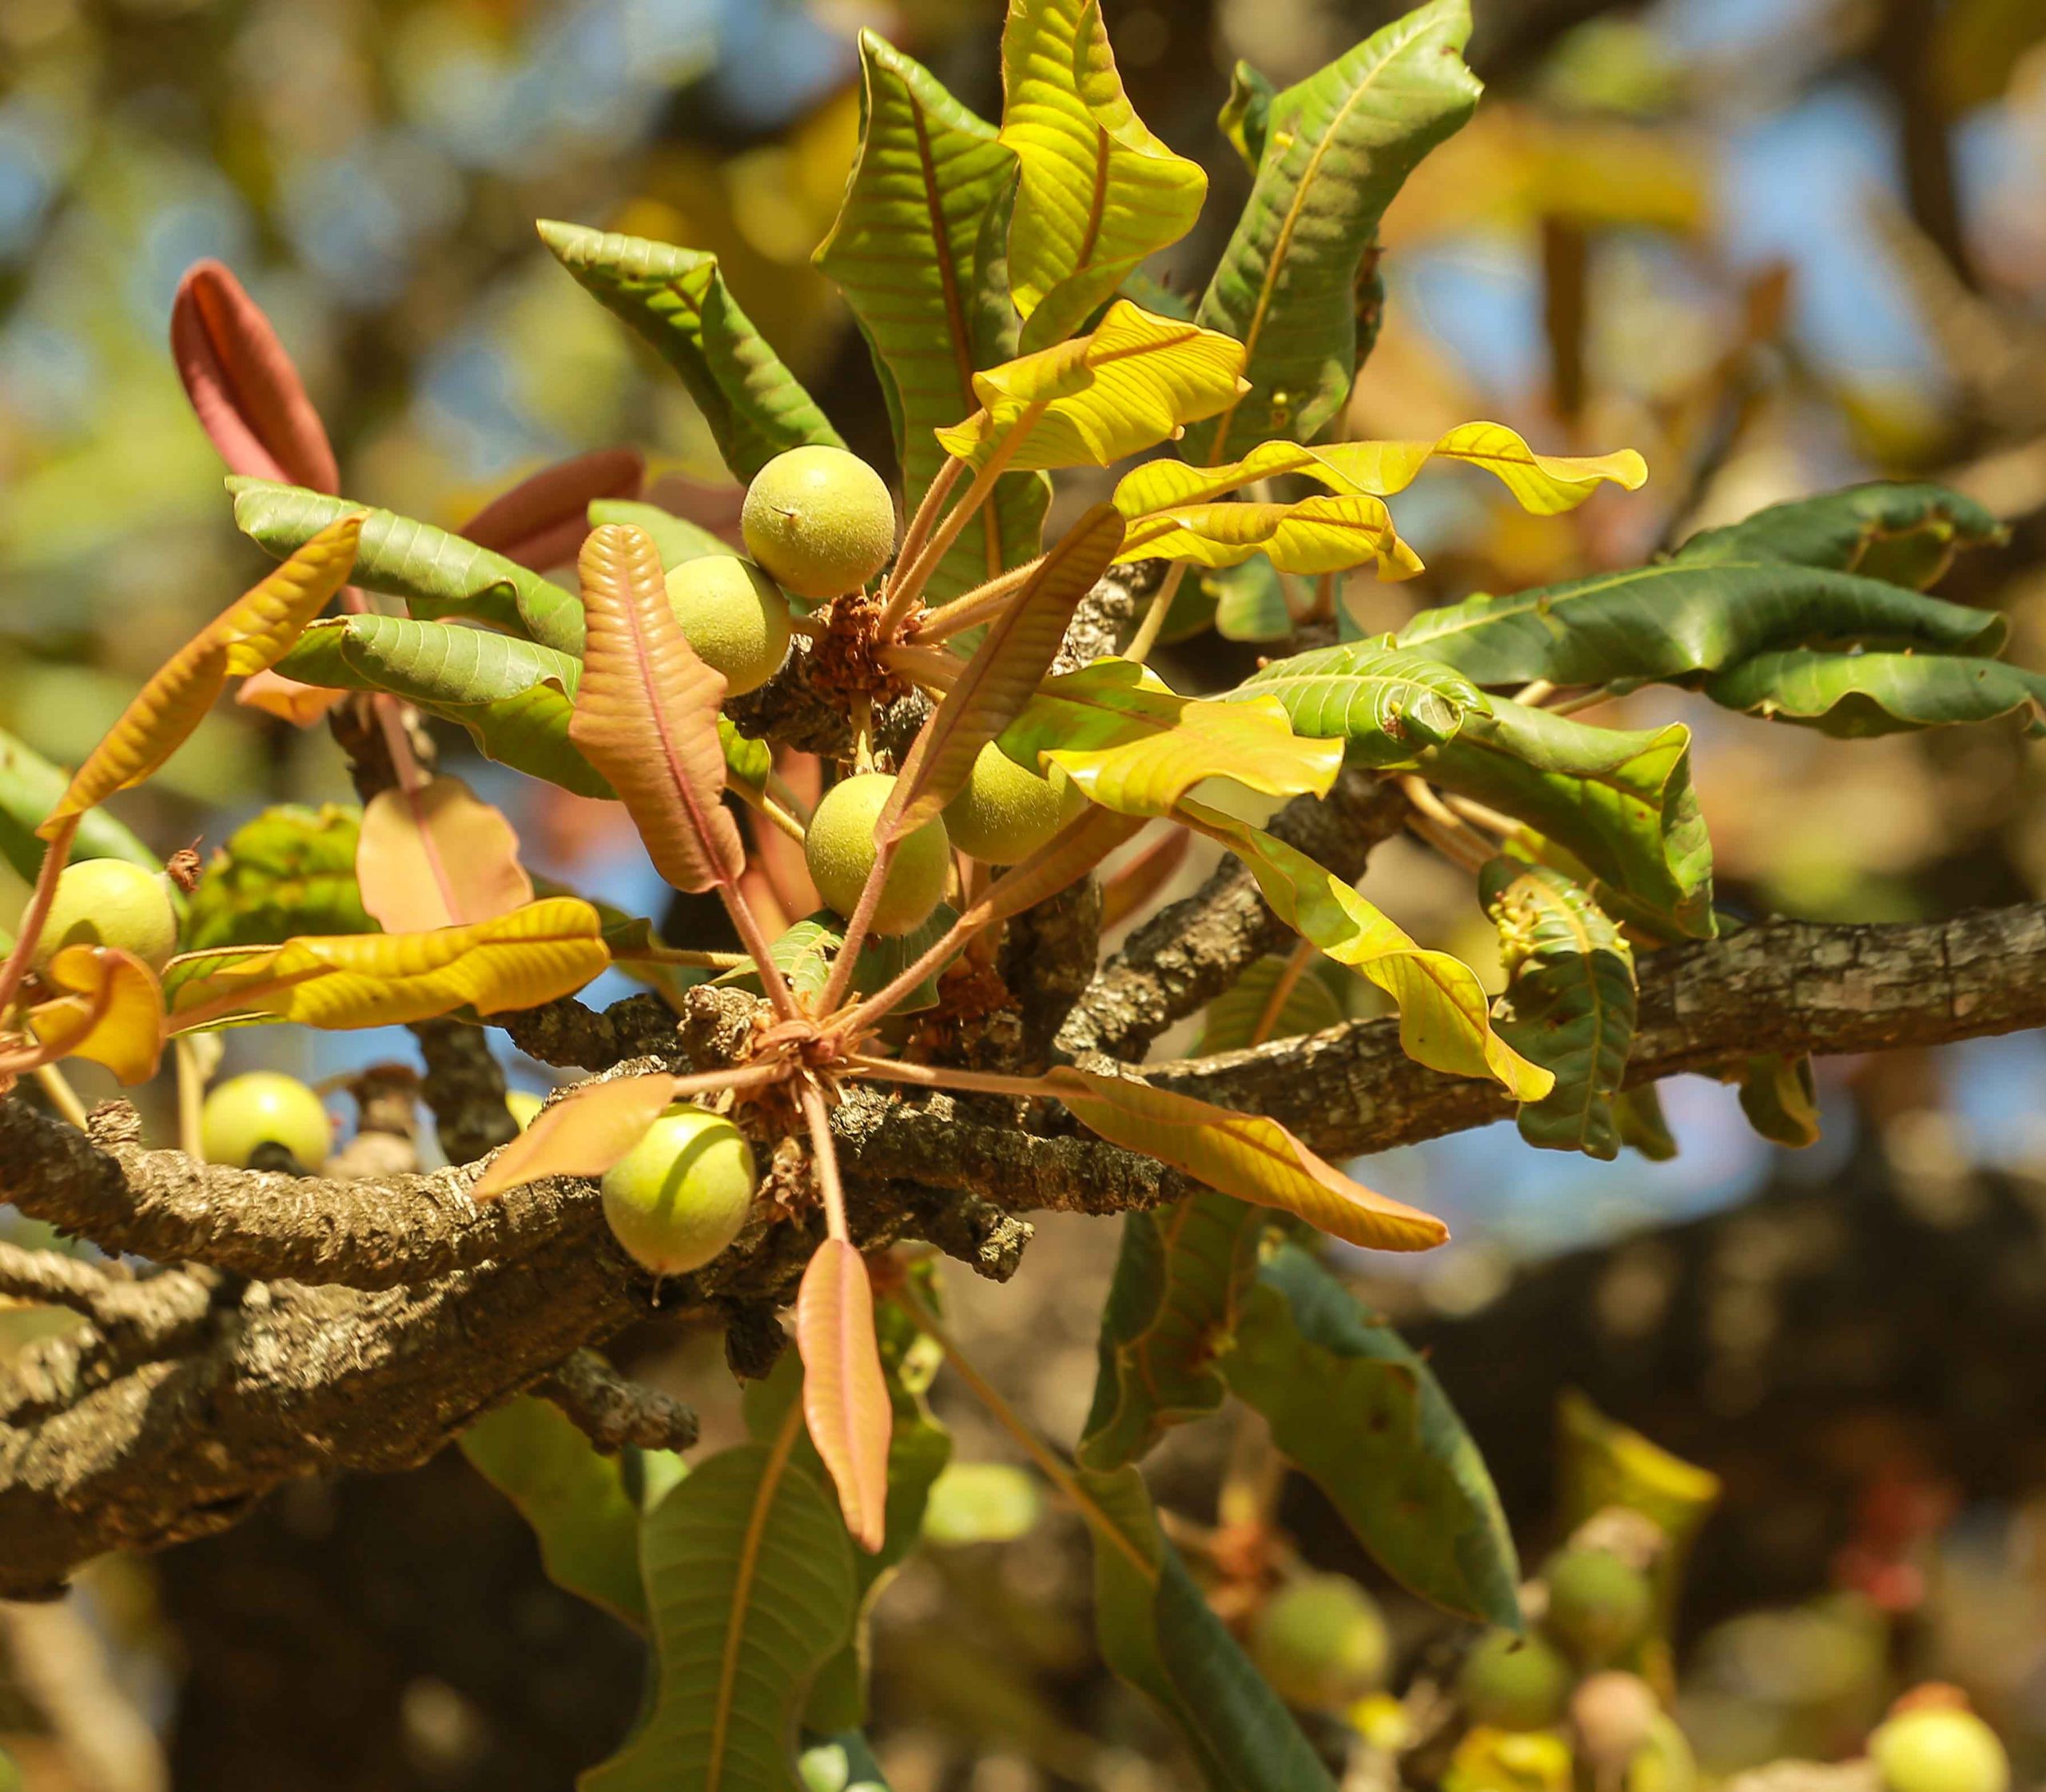 Shea fruits on the Nilotica tree